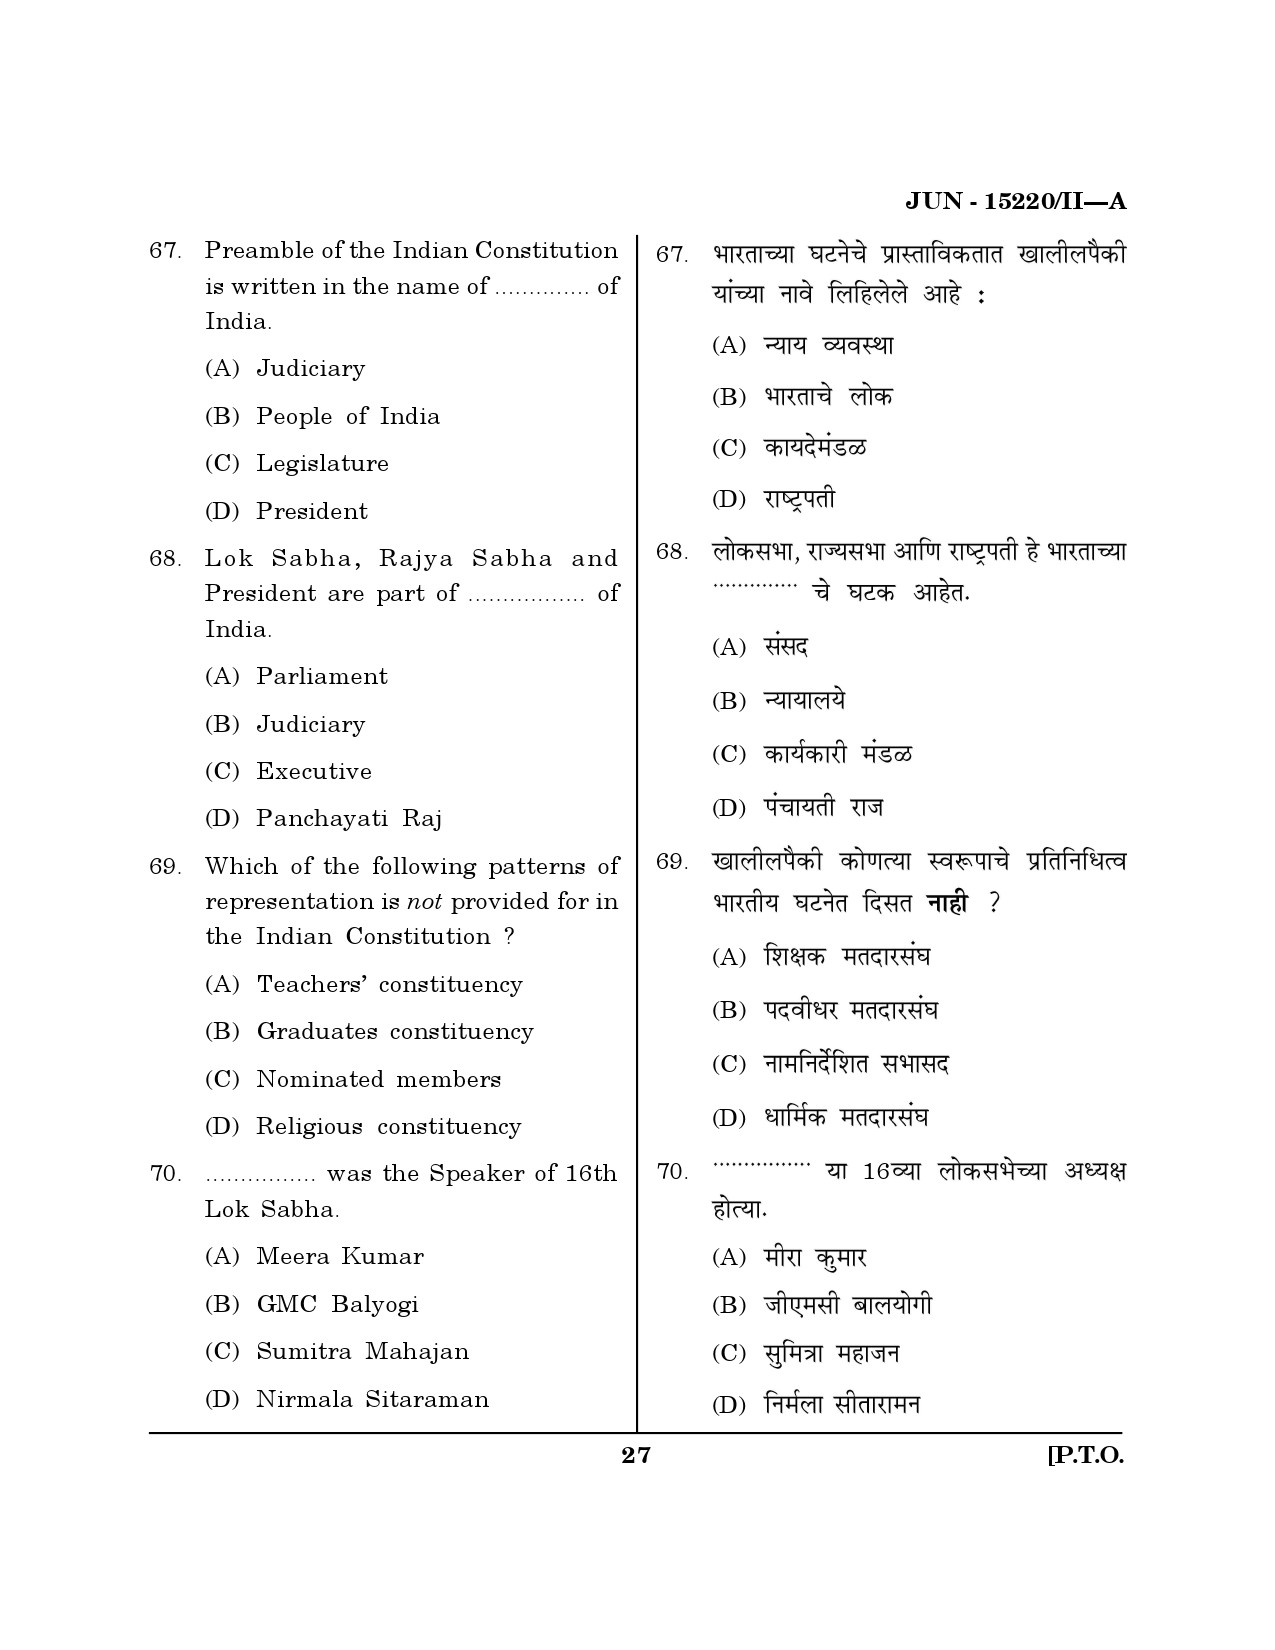 Maharashtra SET Political Science Question Paper II June 2020 26